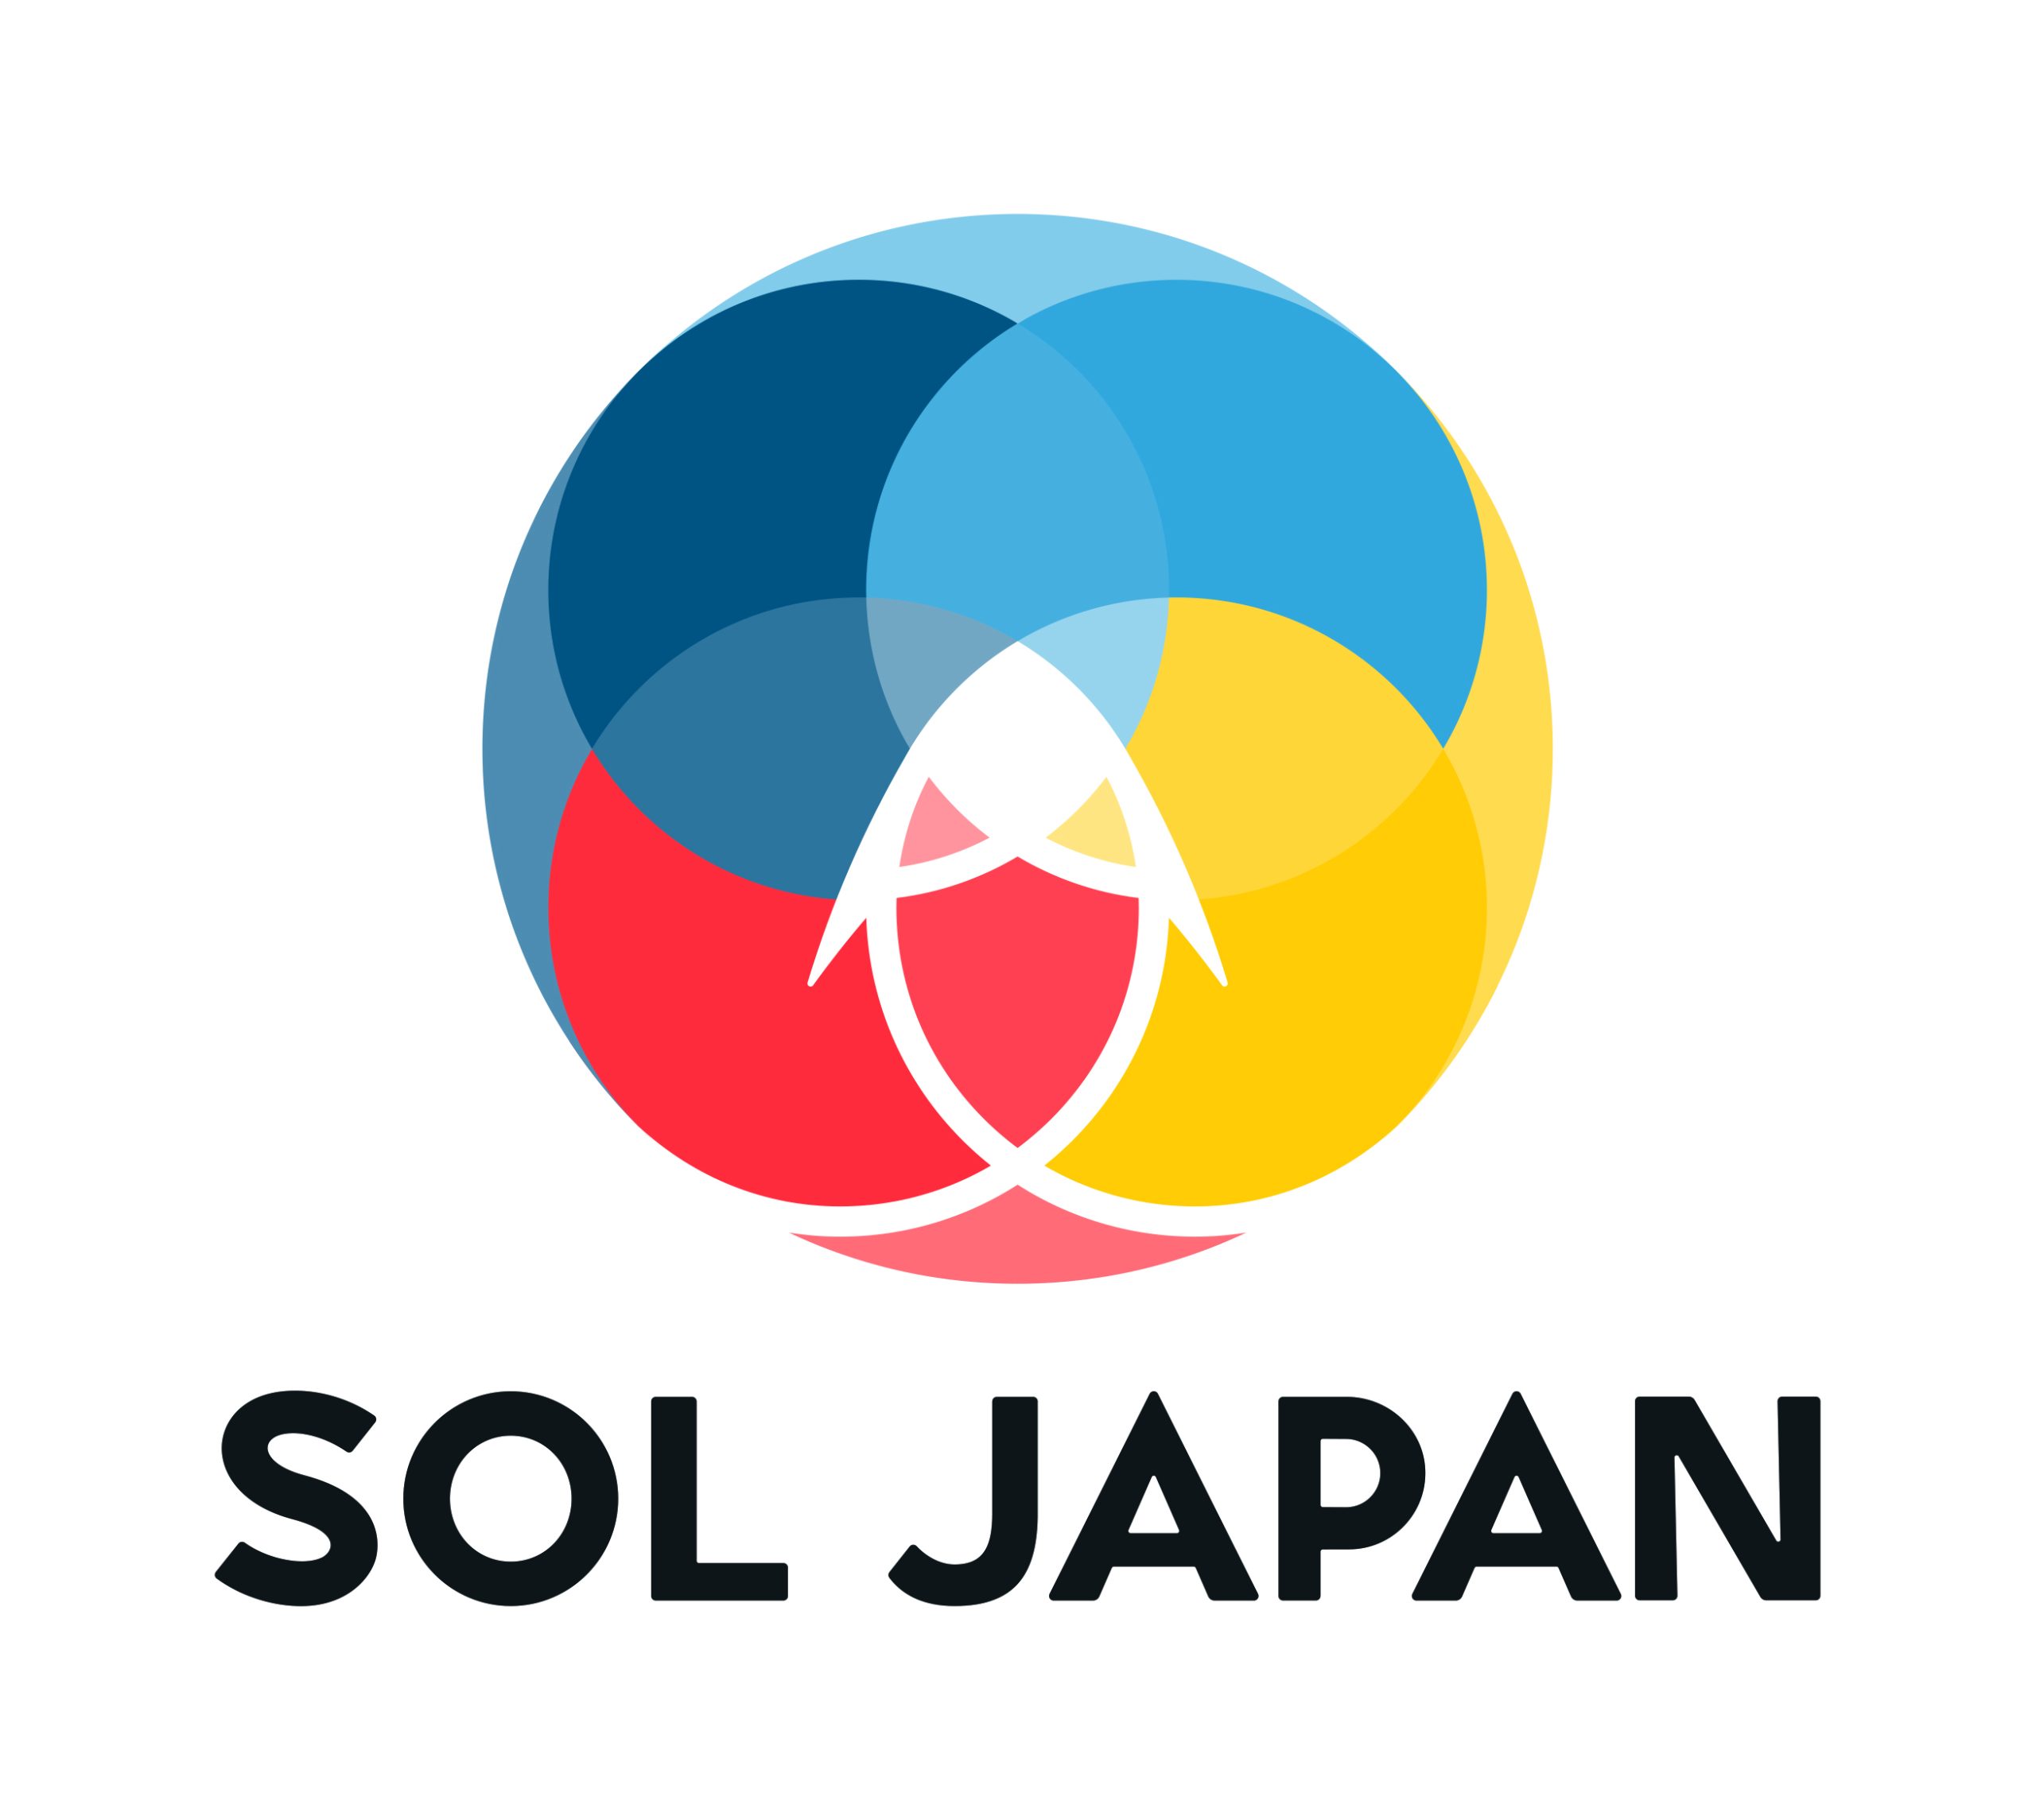 SOL JAPAN